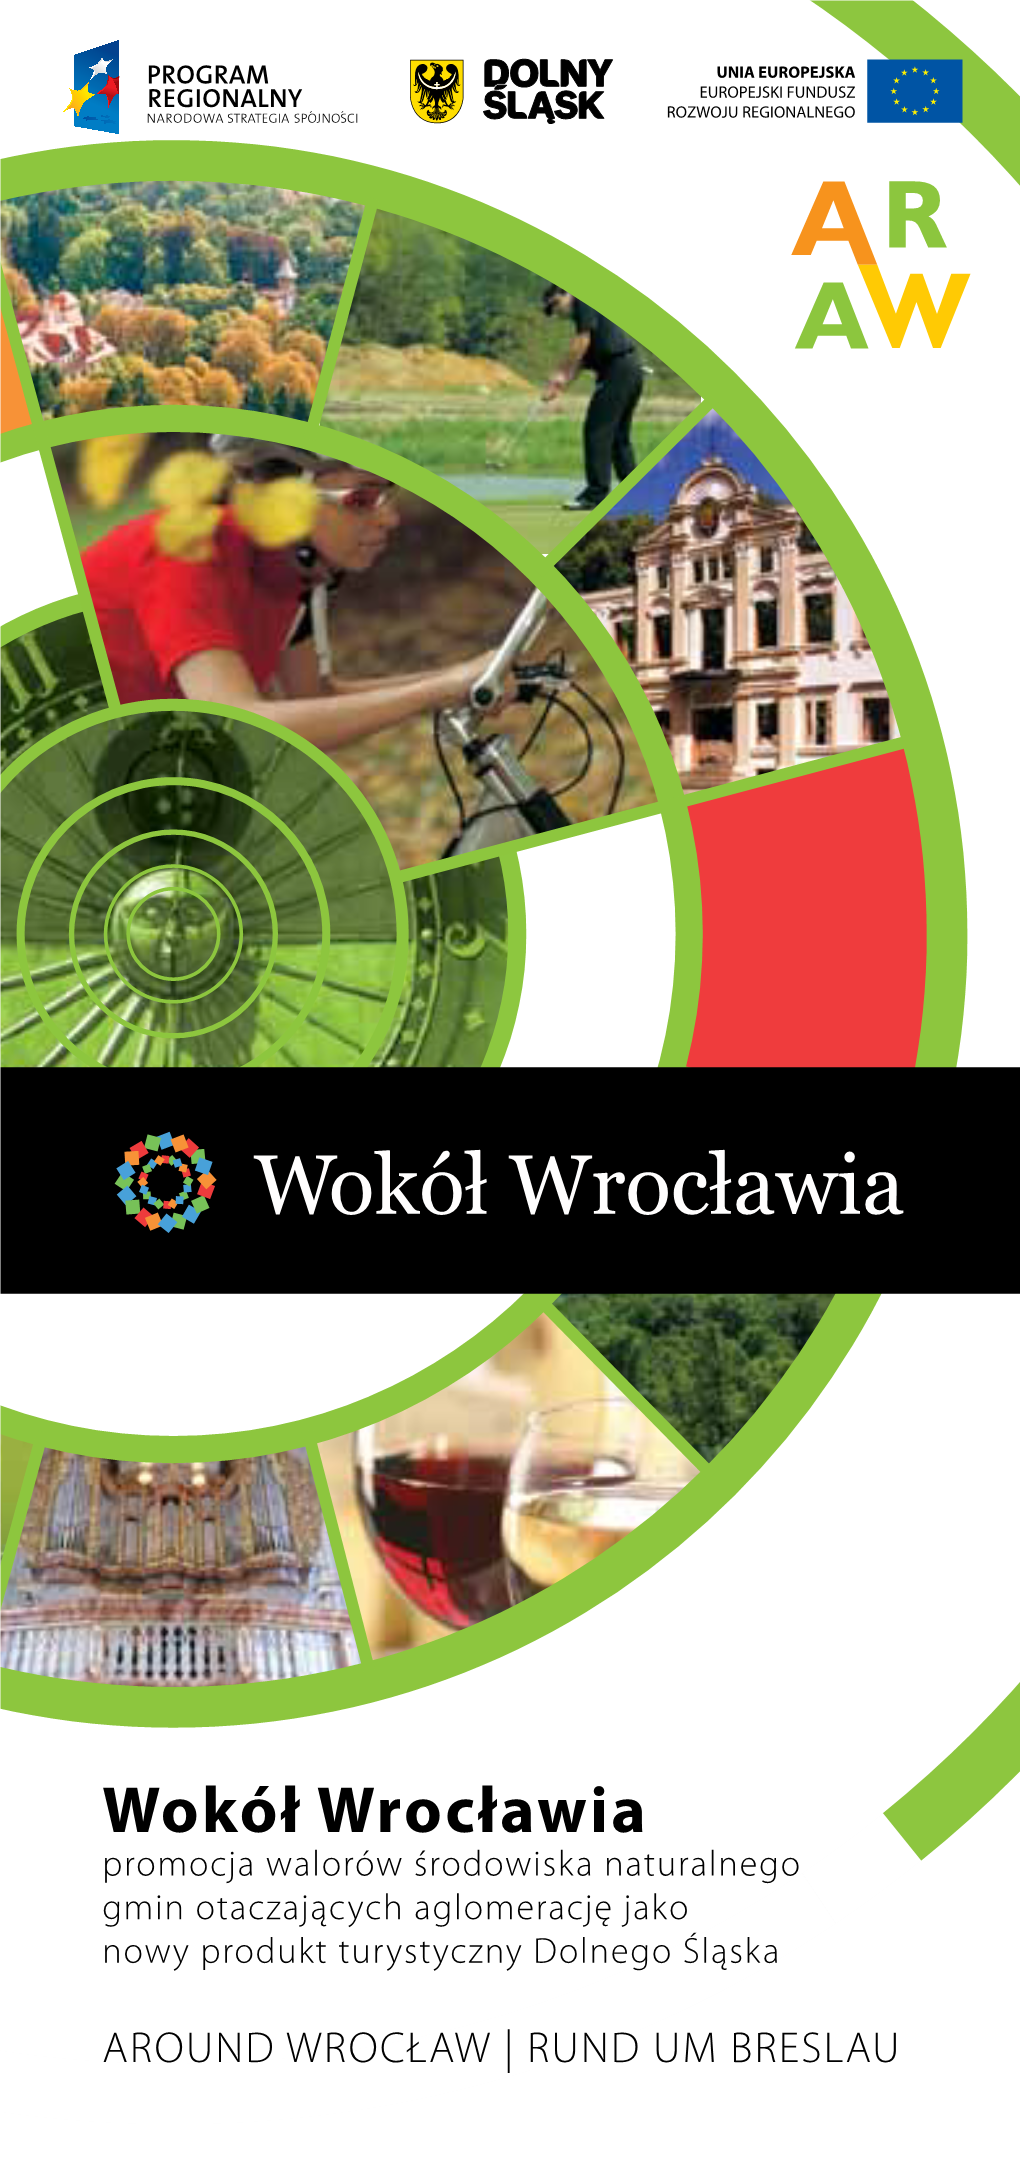 Wokół Wrocławia Promocja Walorów Środowiska Naturalnego Gmin Otaczających Aglomerację Jako Nowy Produkt Turystyczny Dolnego Śląska